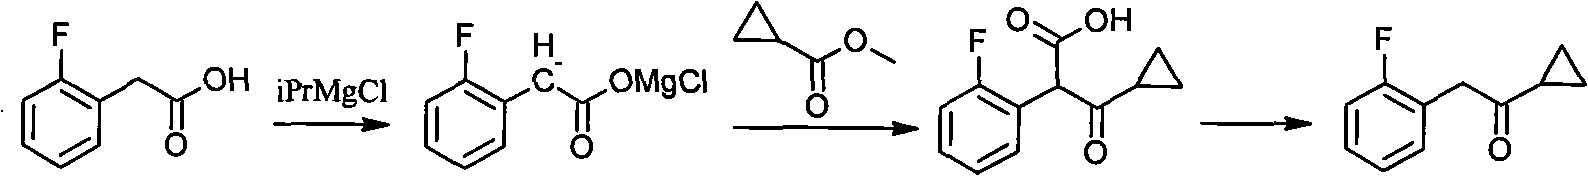 Method for preparing cyclopropyl o-fluobenzyl ketone